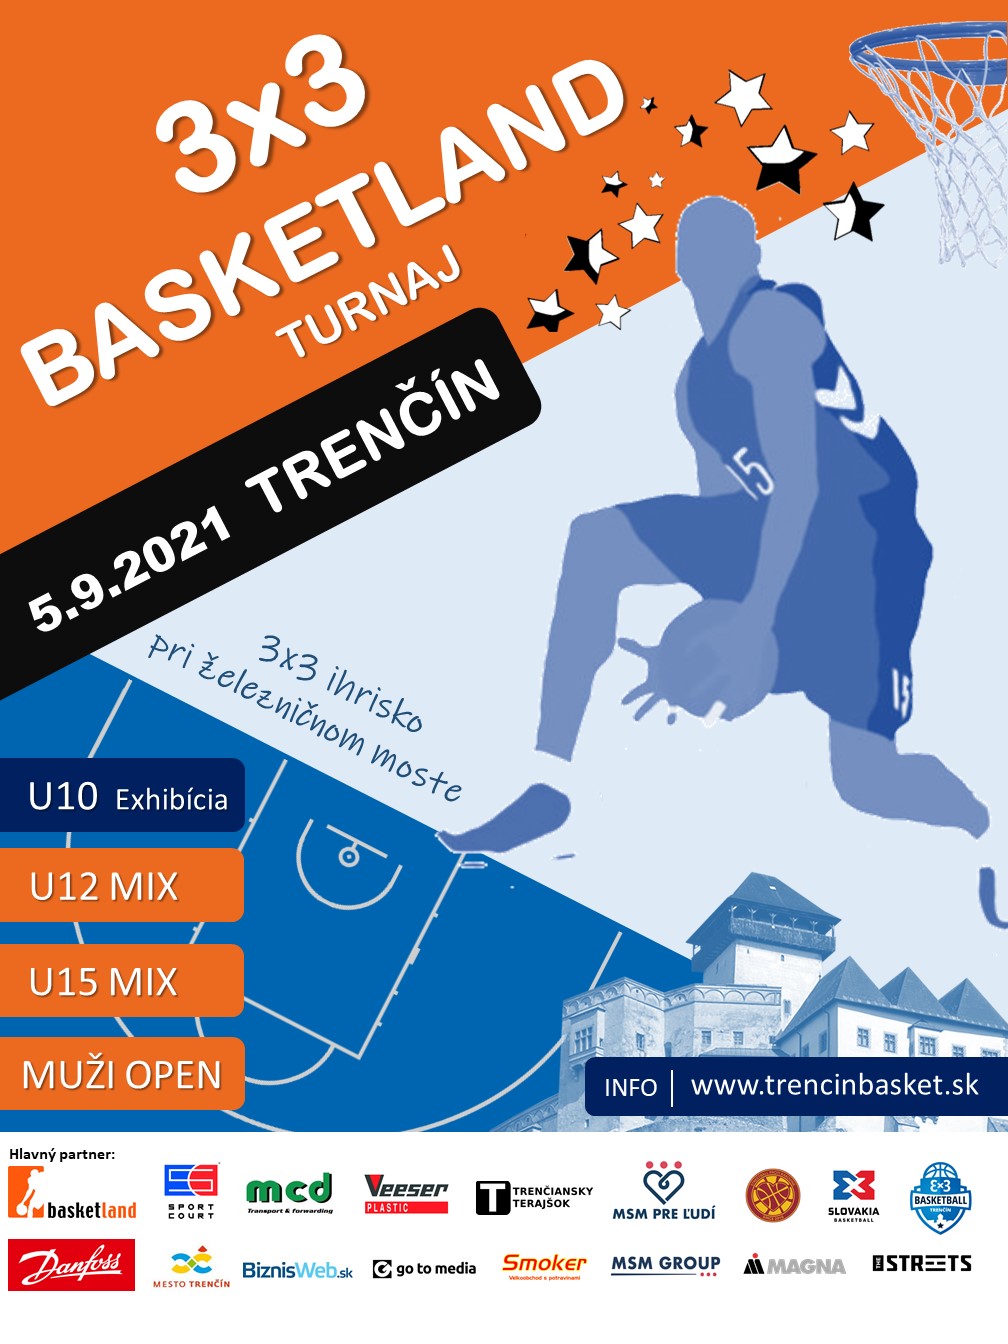 3x3 Basketland turnaj